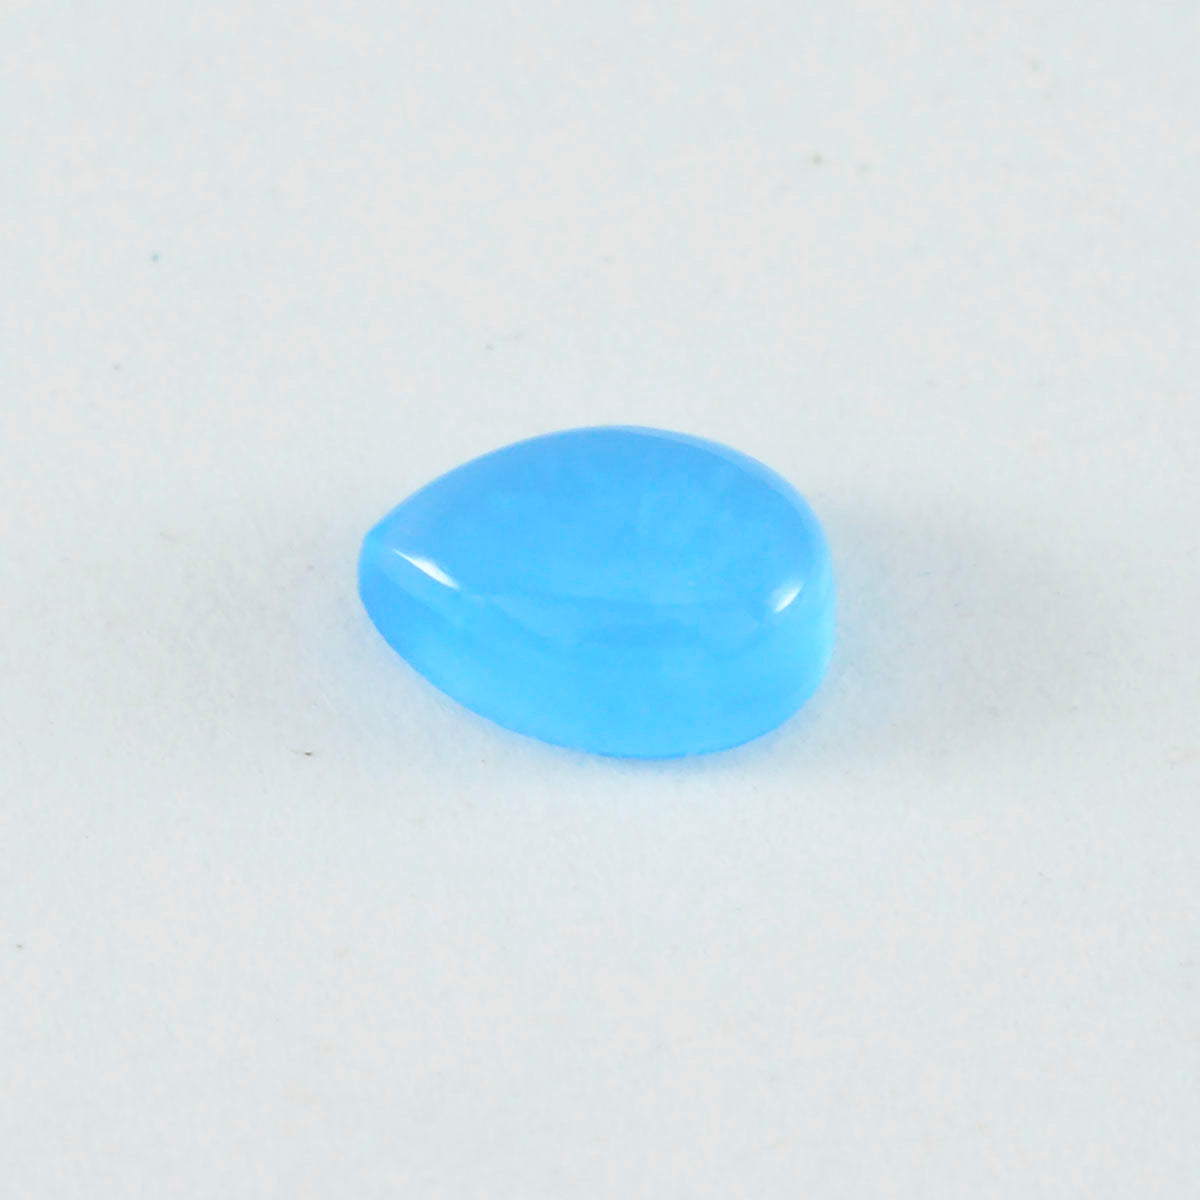 Riyogems 1PC Blue Chalcedony Cabochon 12x16 mm Pear Shape A1 Quality Gem